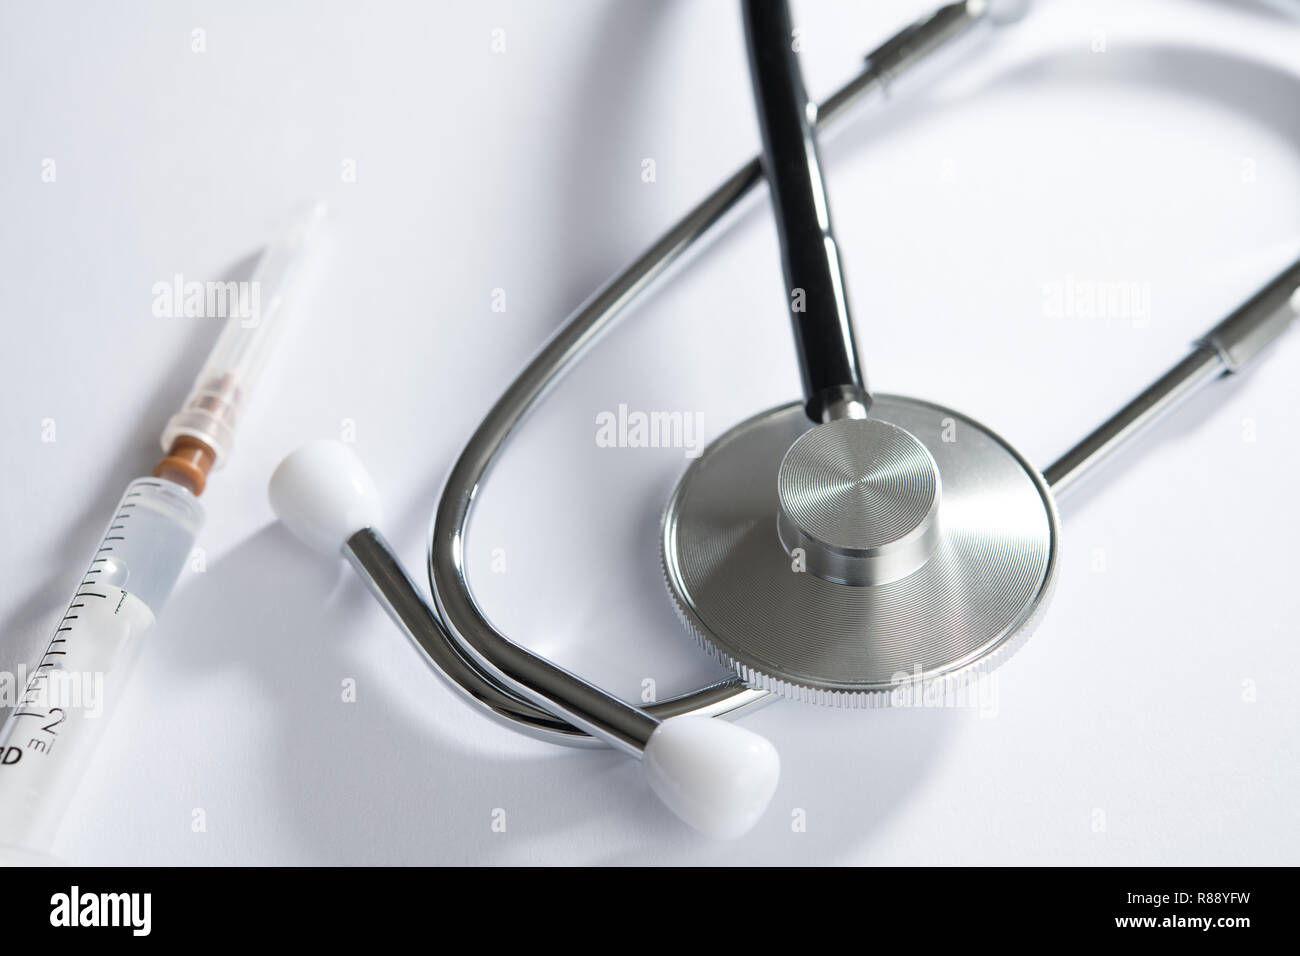 stethoscope on white table with syringe Stock Photo